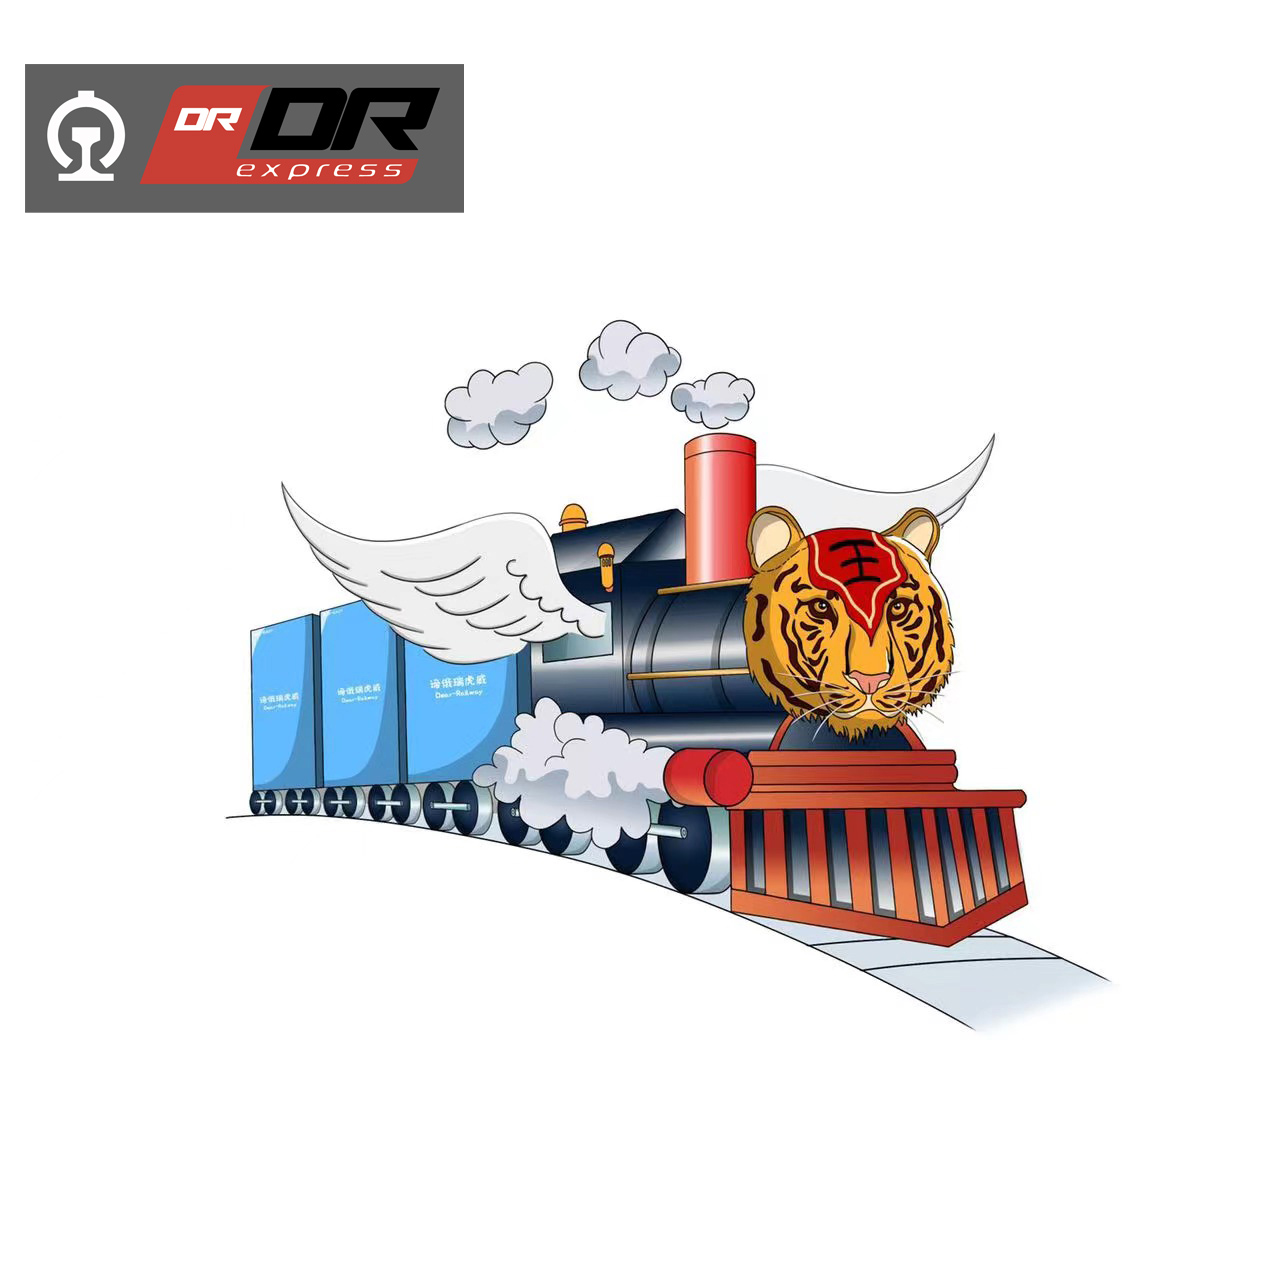 Schienentransportreifen von China nach Russland.